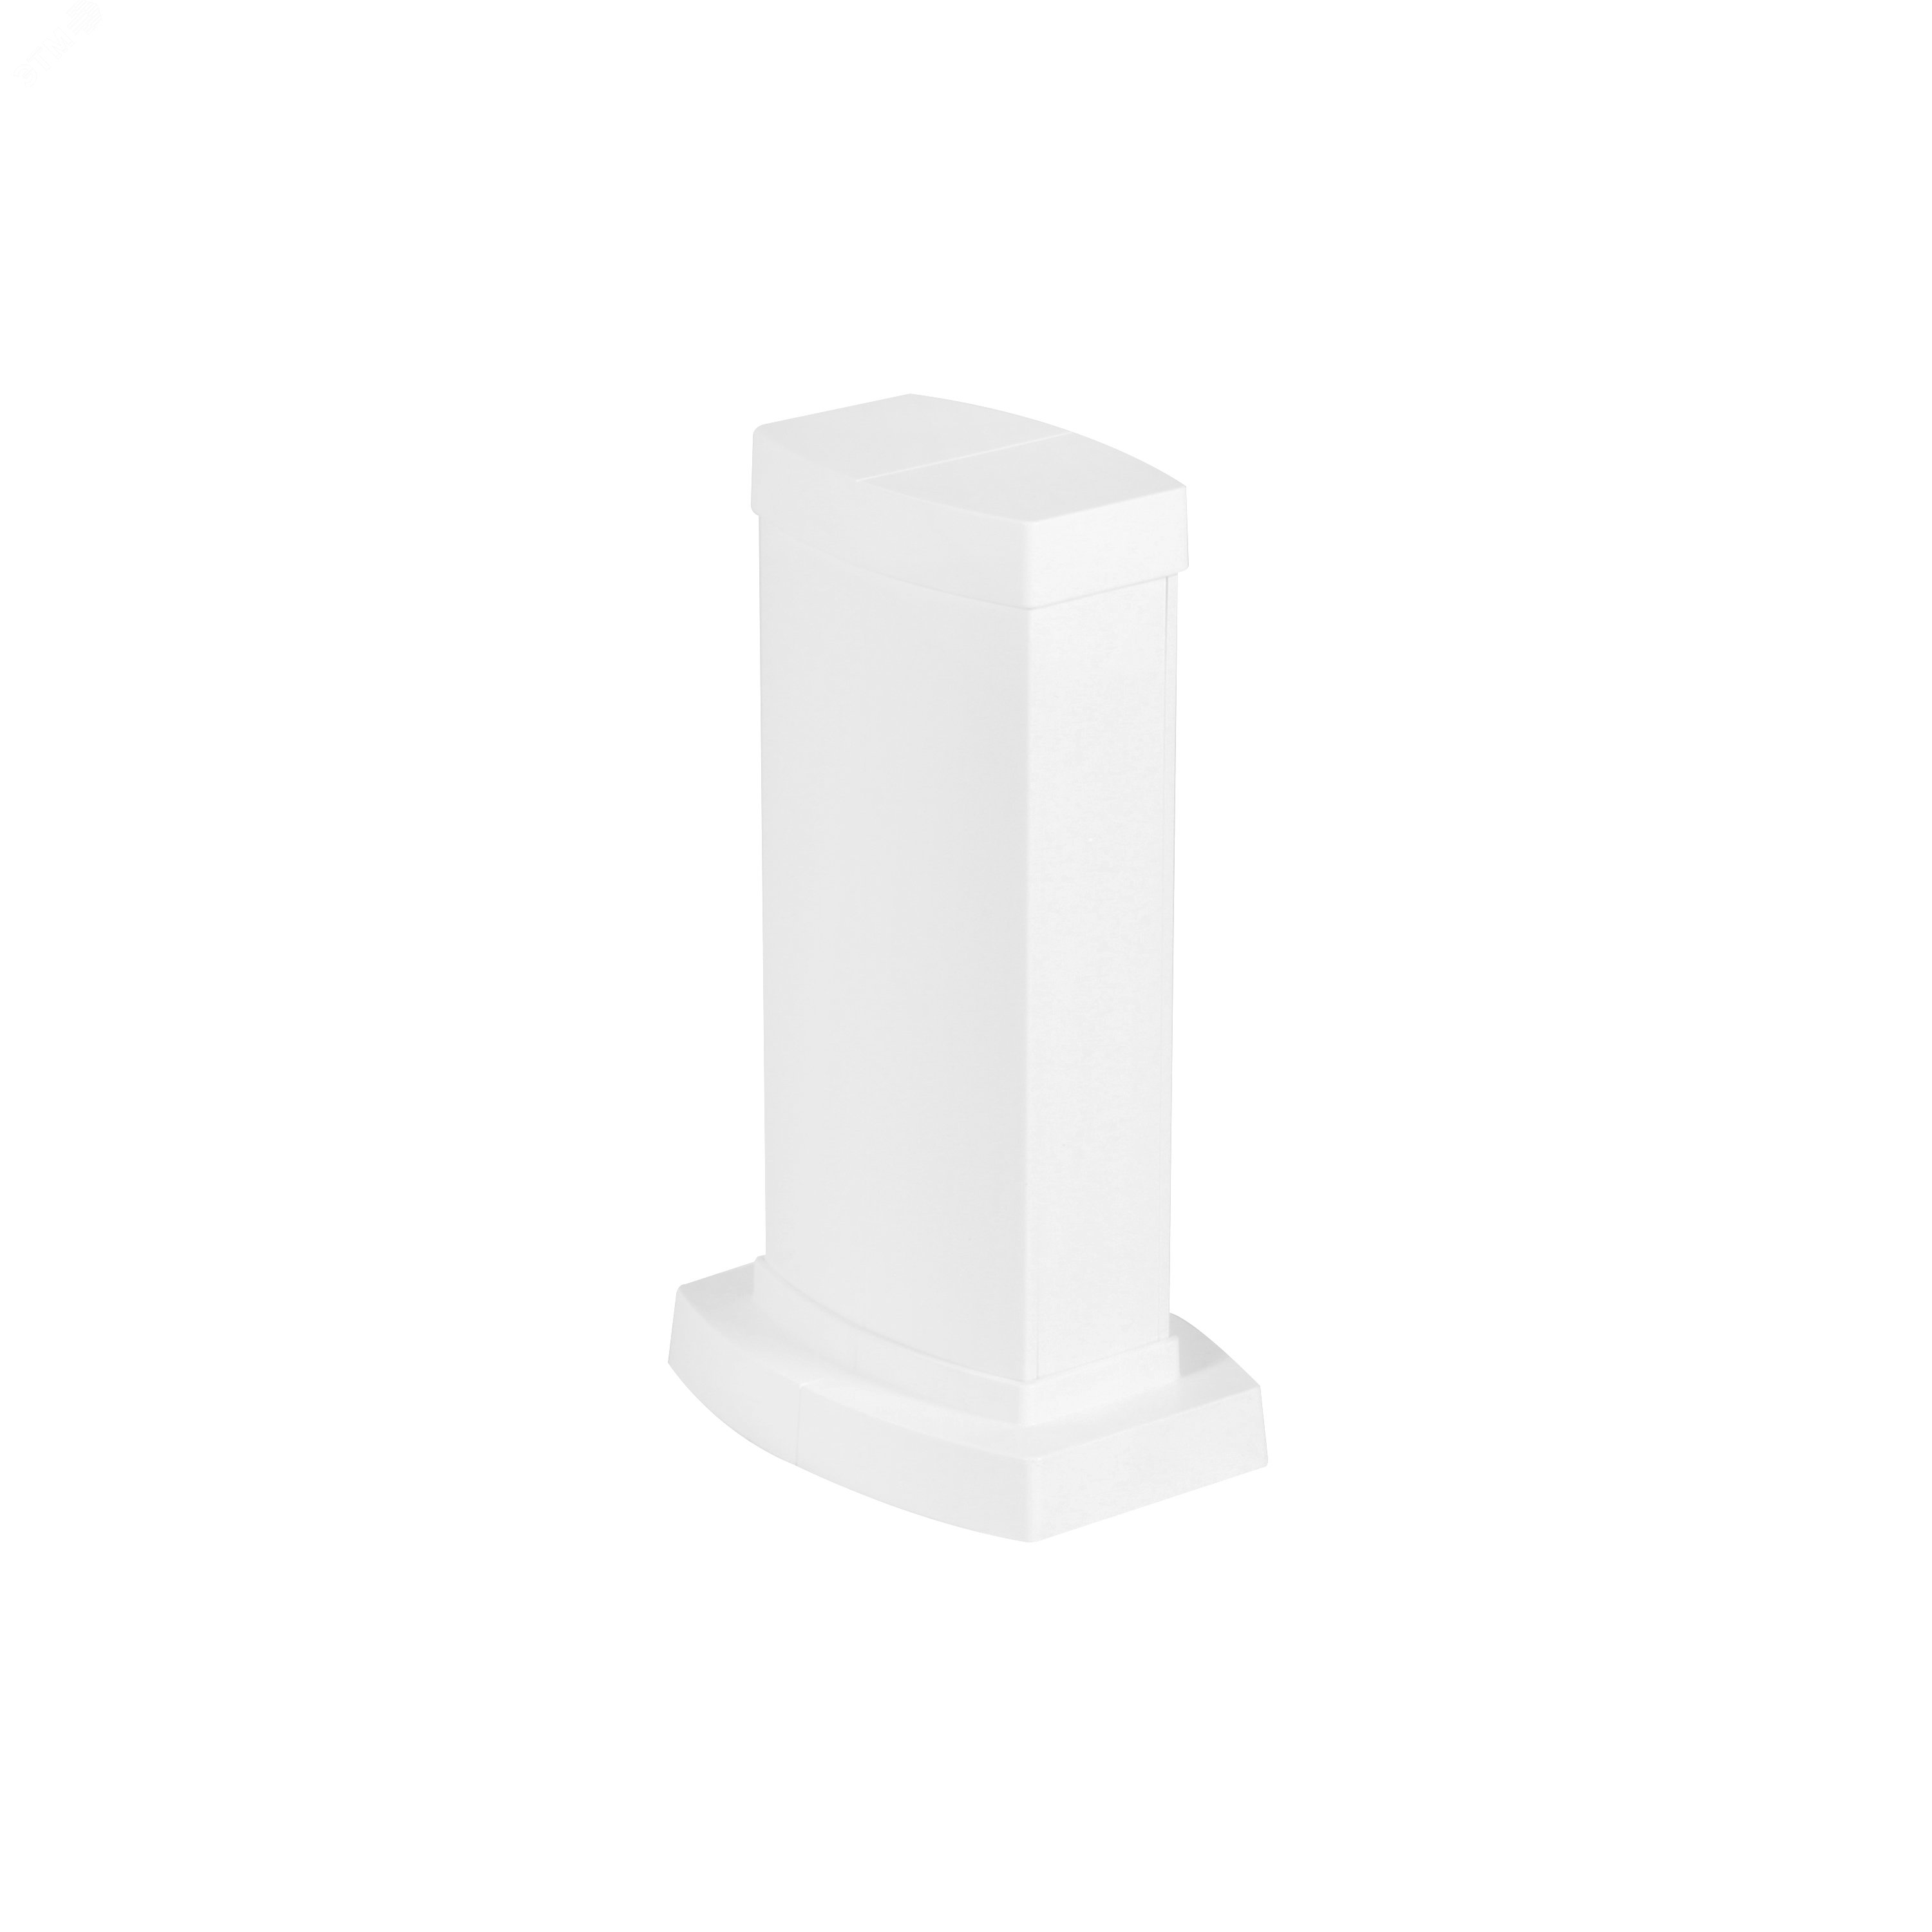 Snap-On мини-колонна пластиковая с крышкой из пластика 2 секции, высота 0,3 метра, цвет белый 653020 Legrand - превью 2